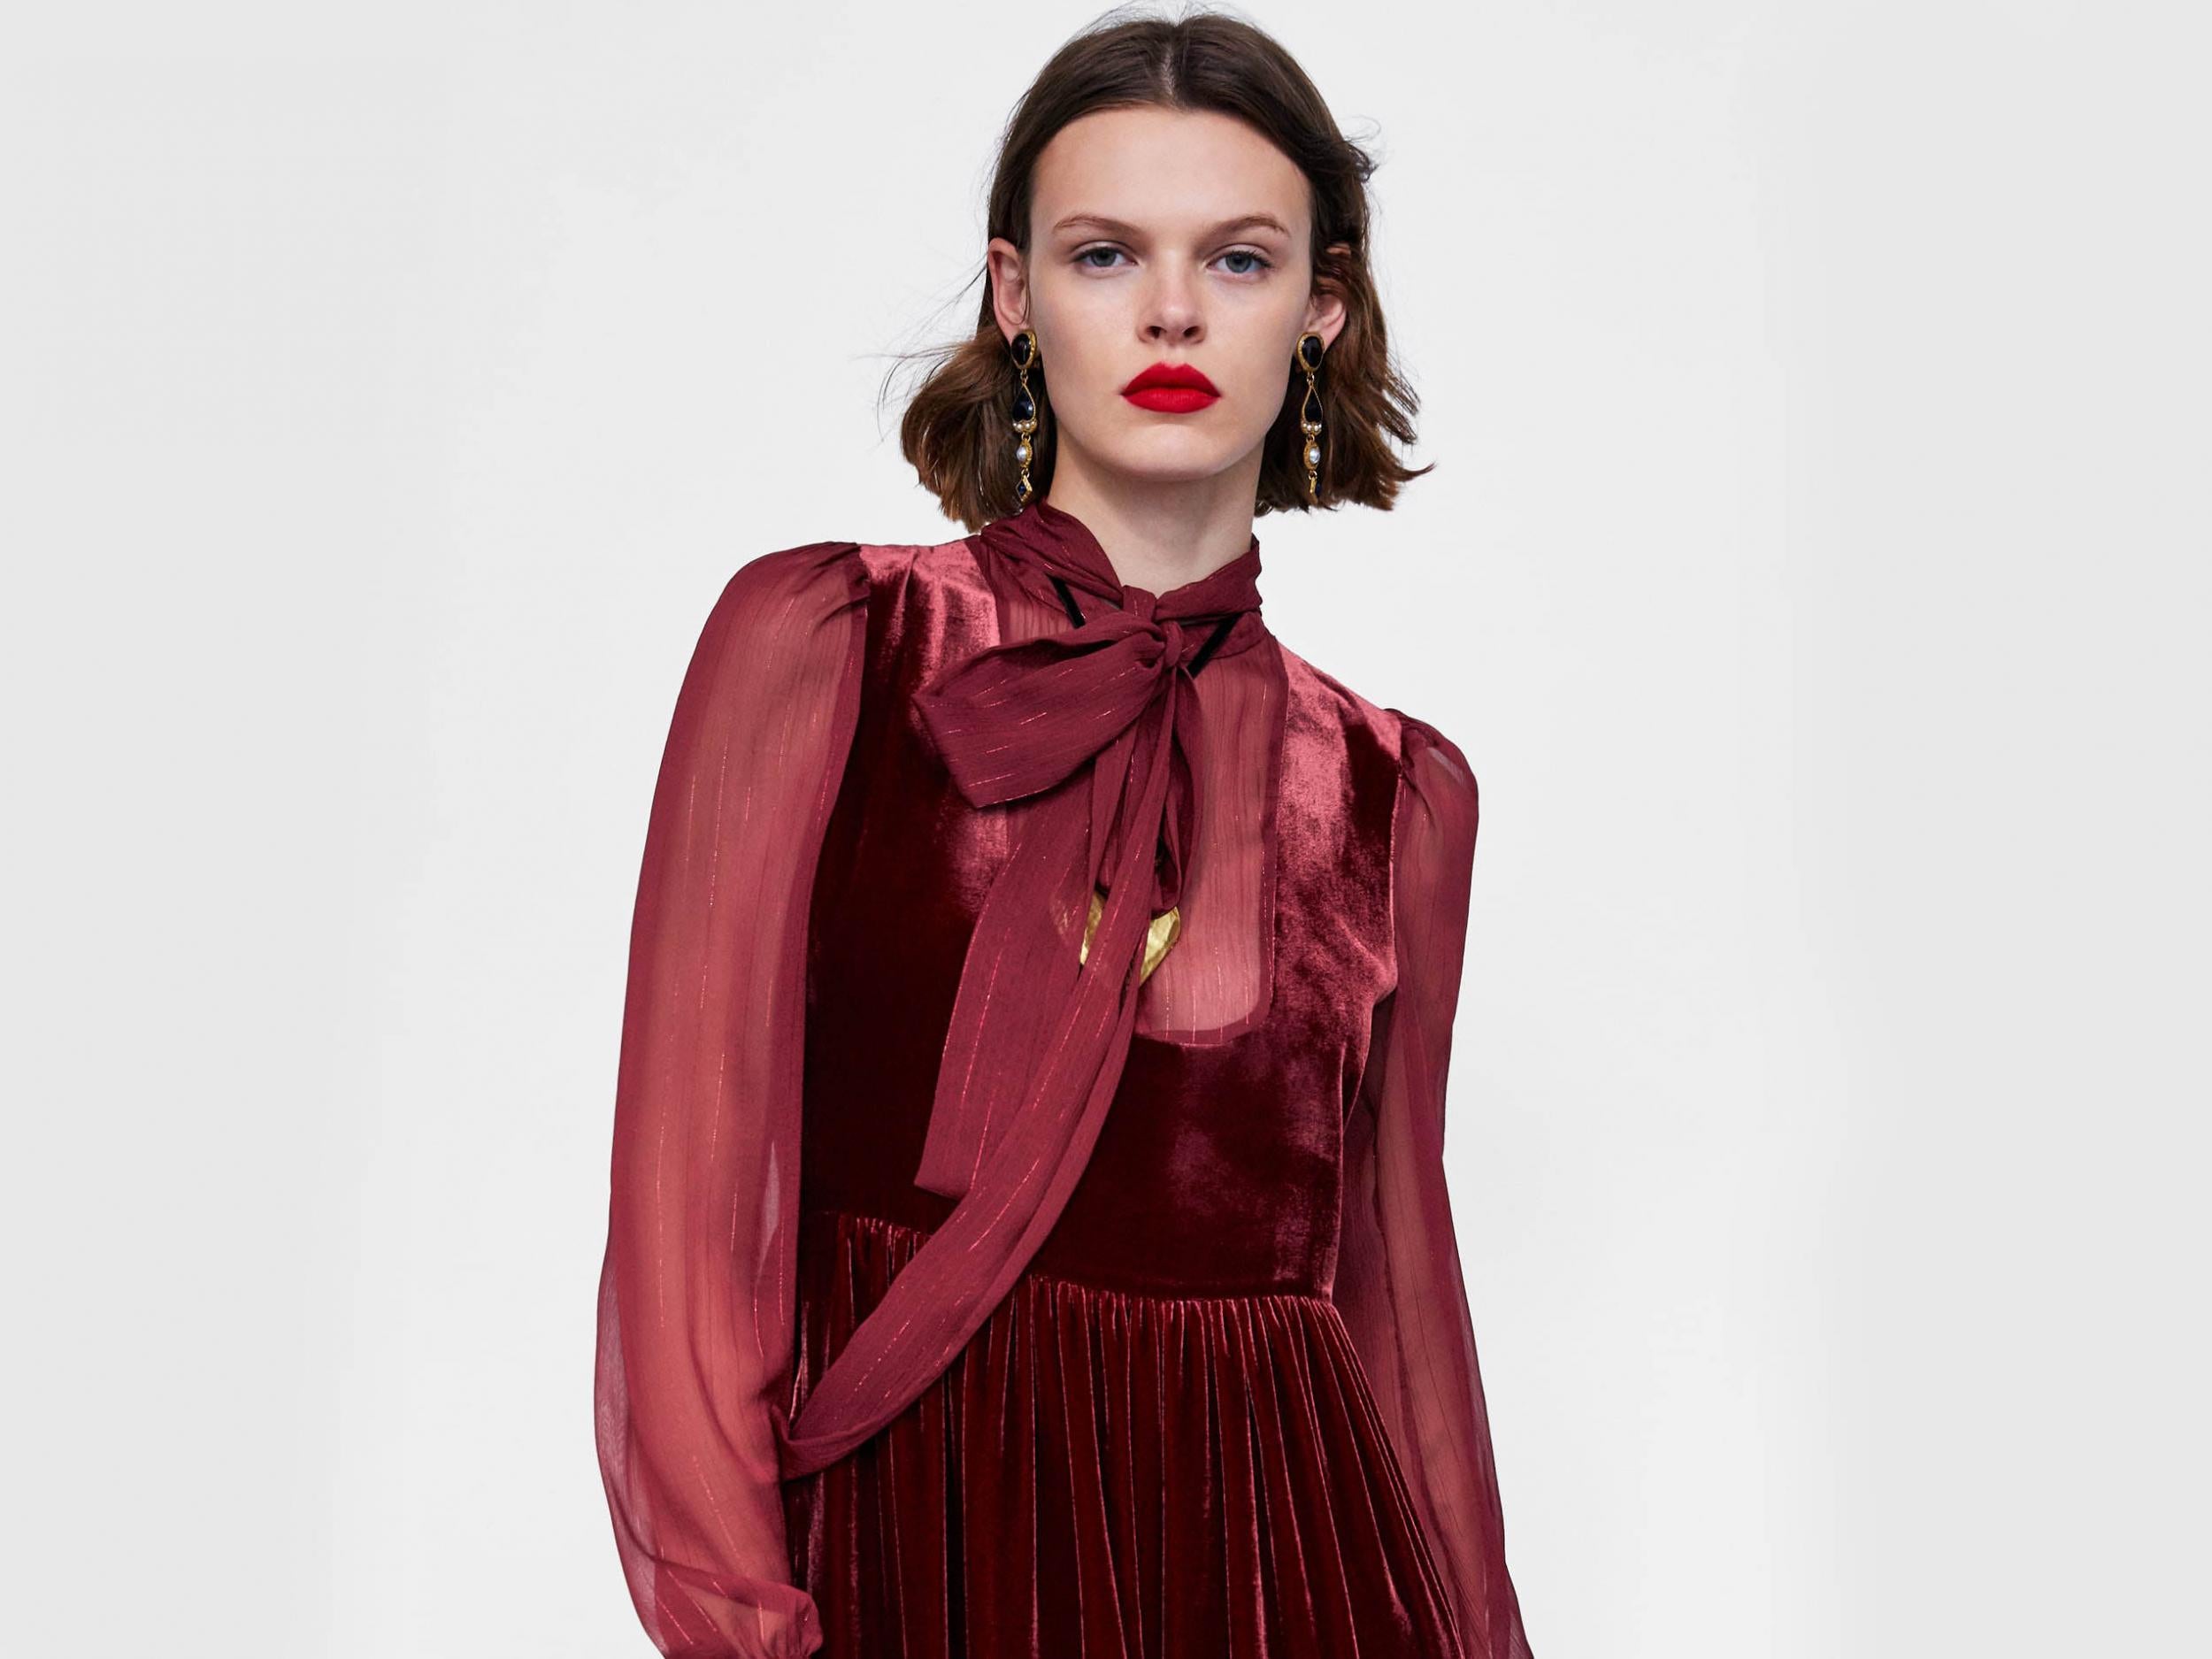 Velvet-Effect Dress, £99.99, Zara